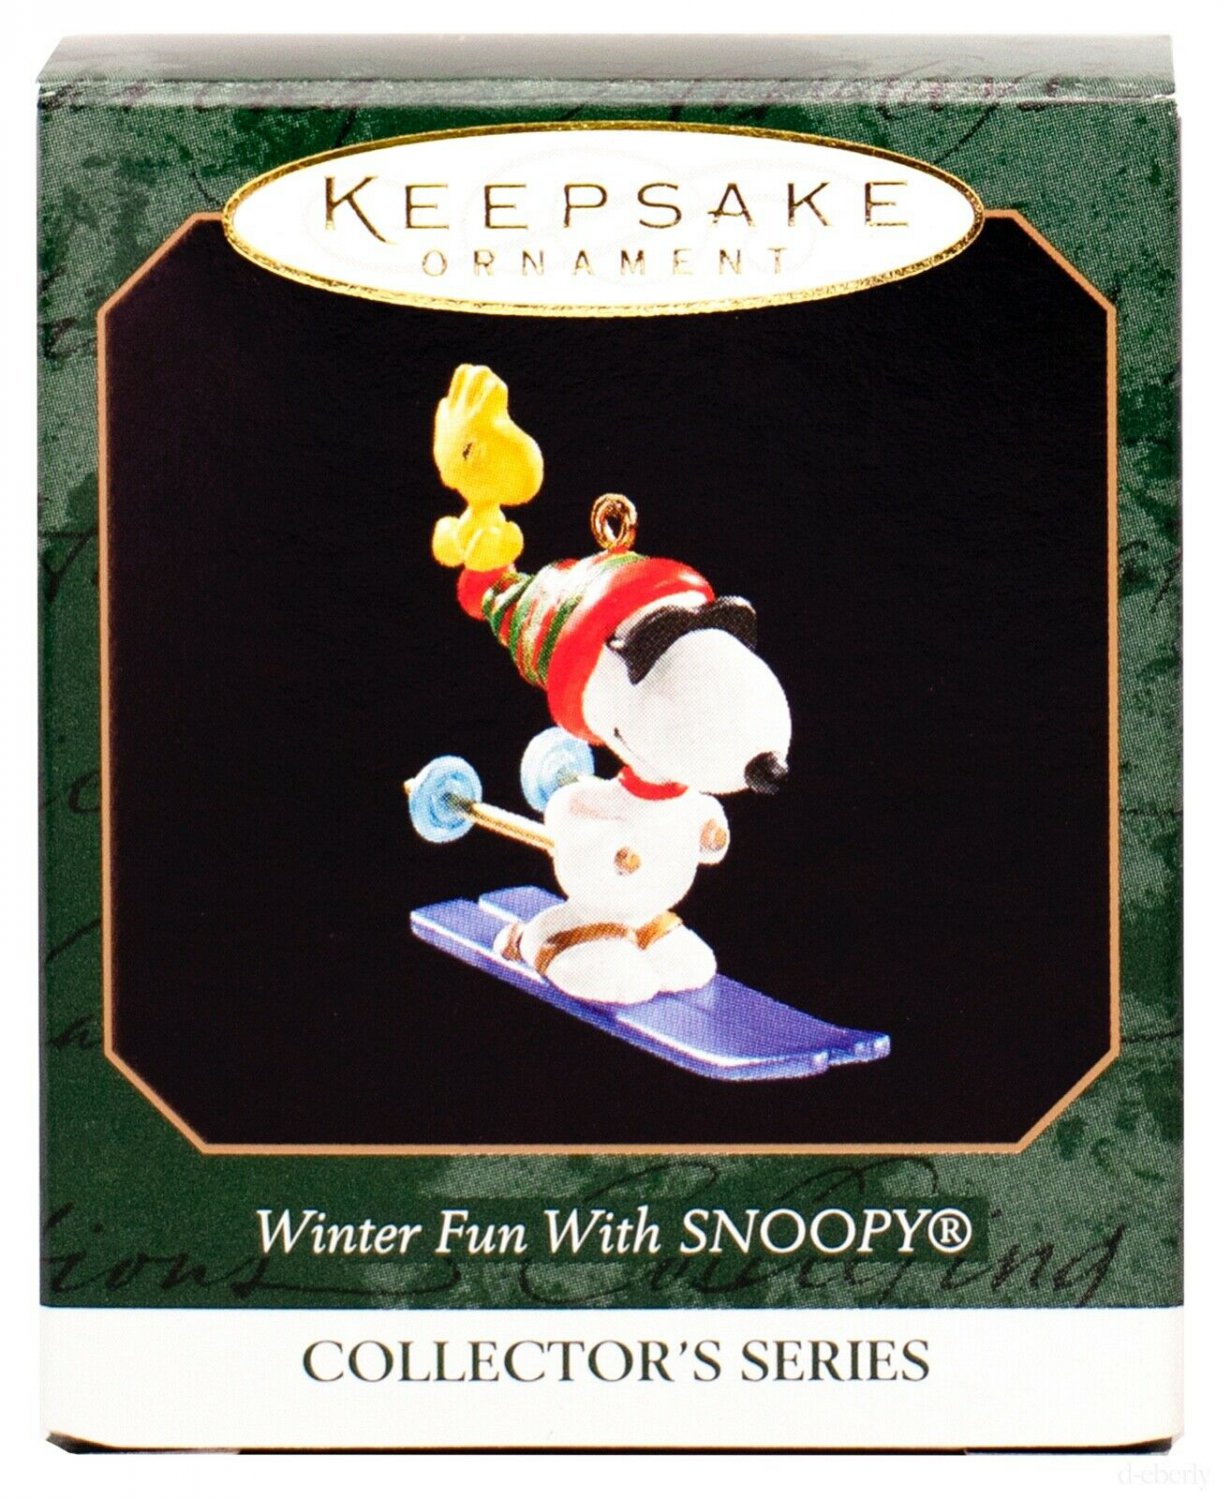 RARE "Winter Fun with SNOOPY" NEW Hallmark Miniature 1999 Ornament PEANUTS